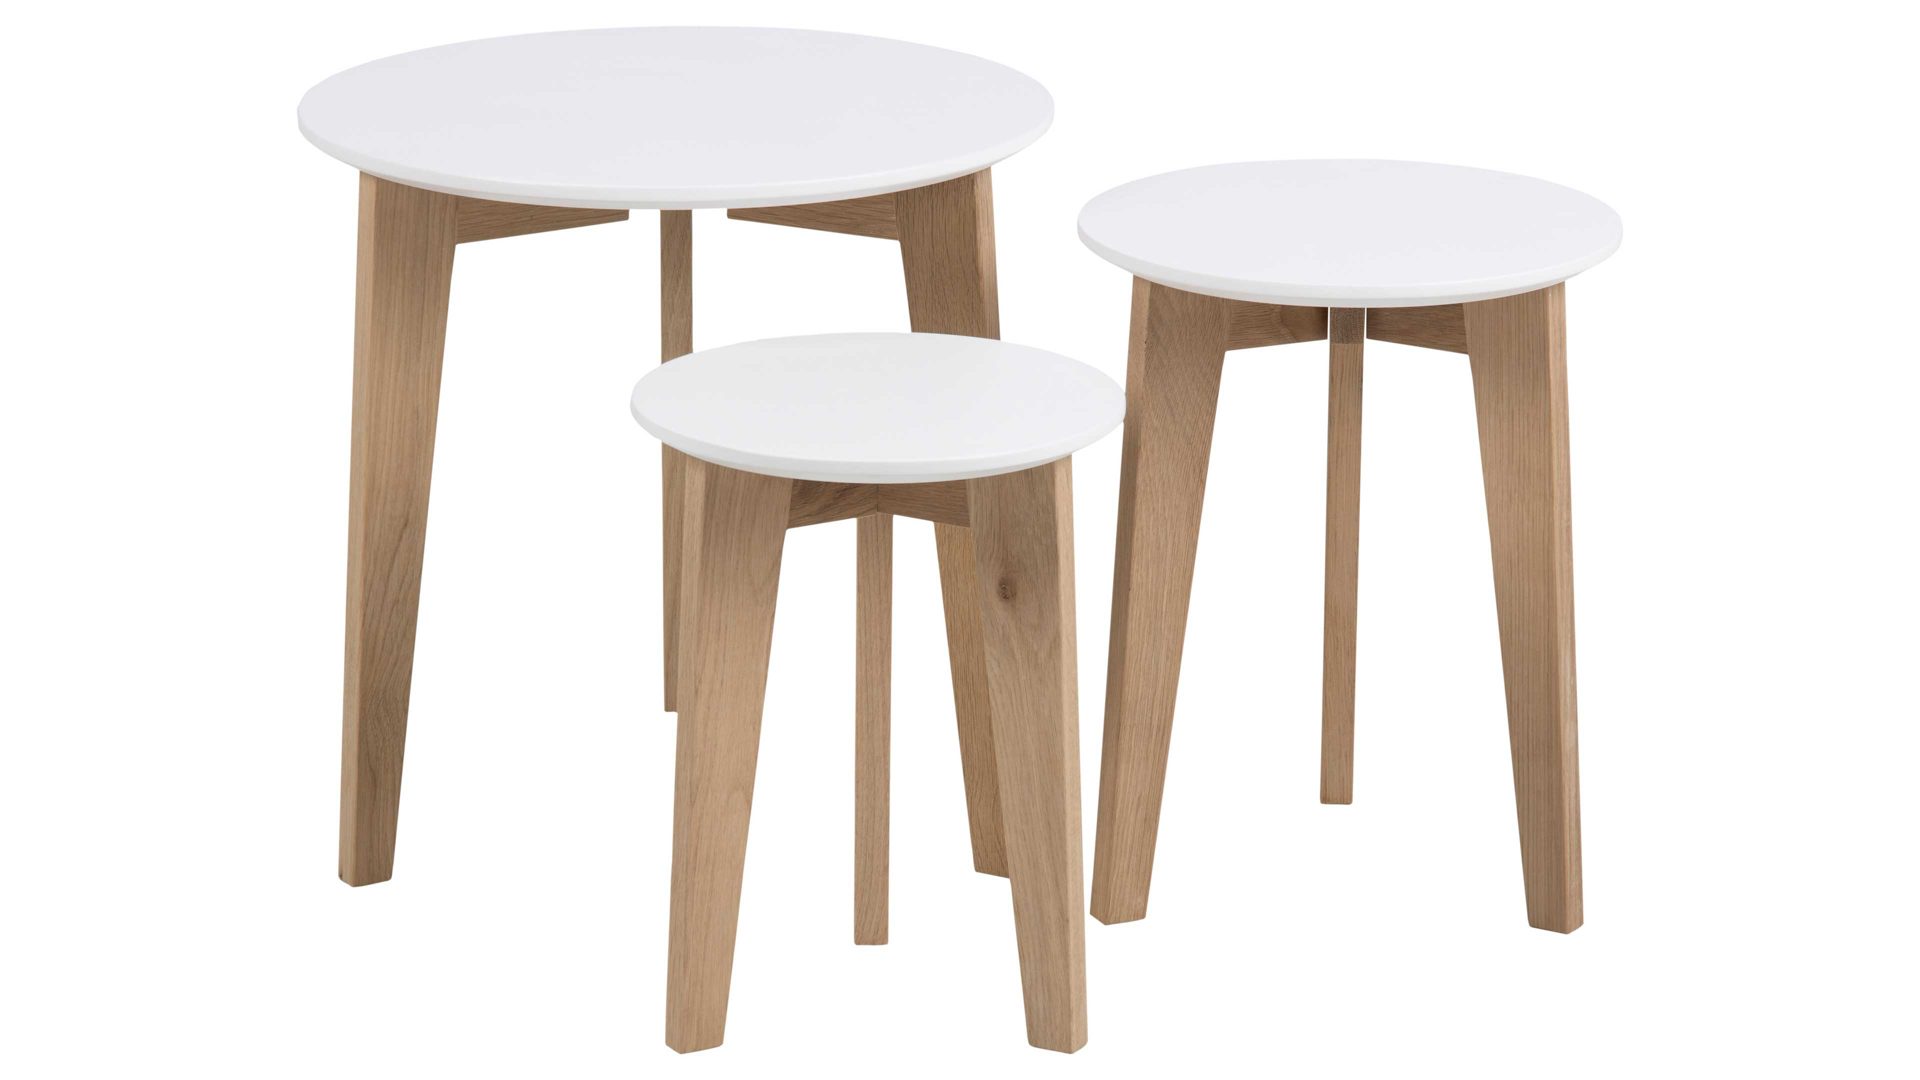 3-Satz-Tisch Actona group a/s aus Holz in Weiß Beistelltisch-Set Abin, ein 3-teiliger Satztisch  Weiß & Eiche - dreiteilig